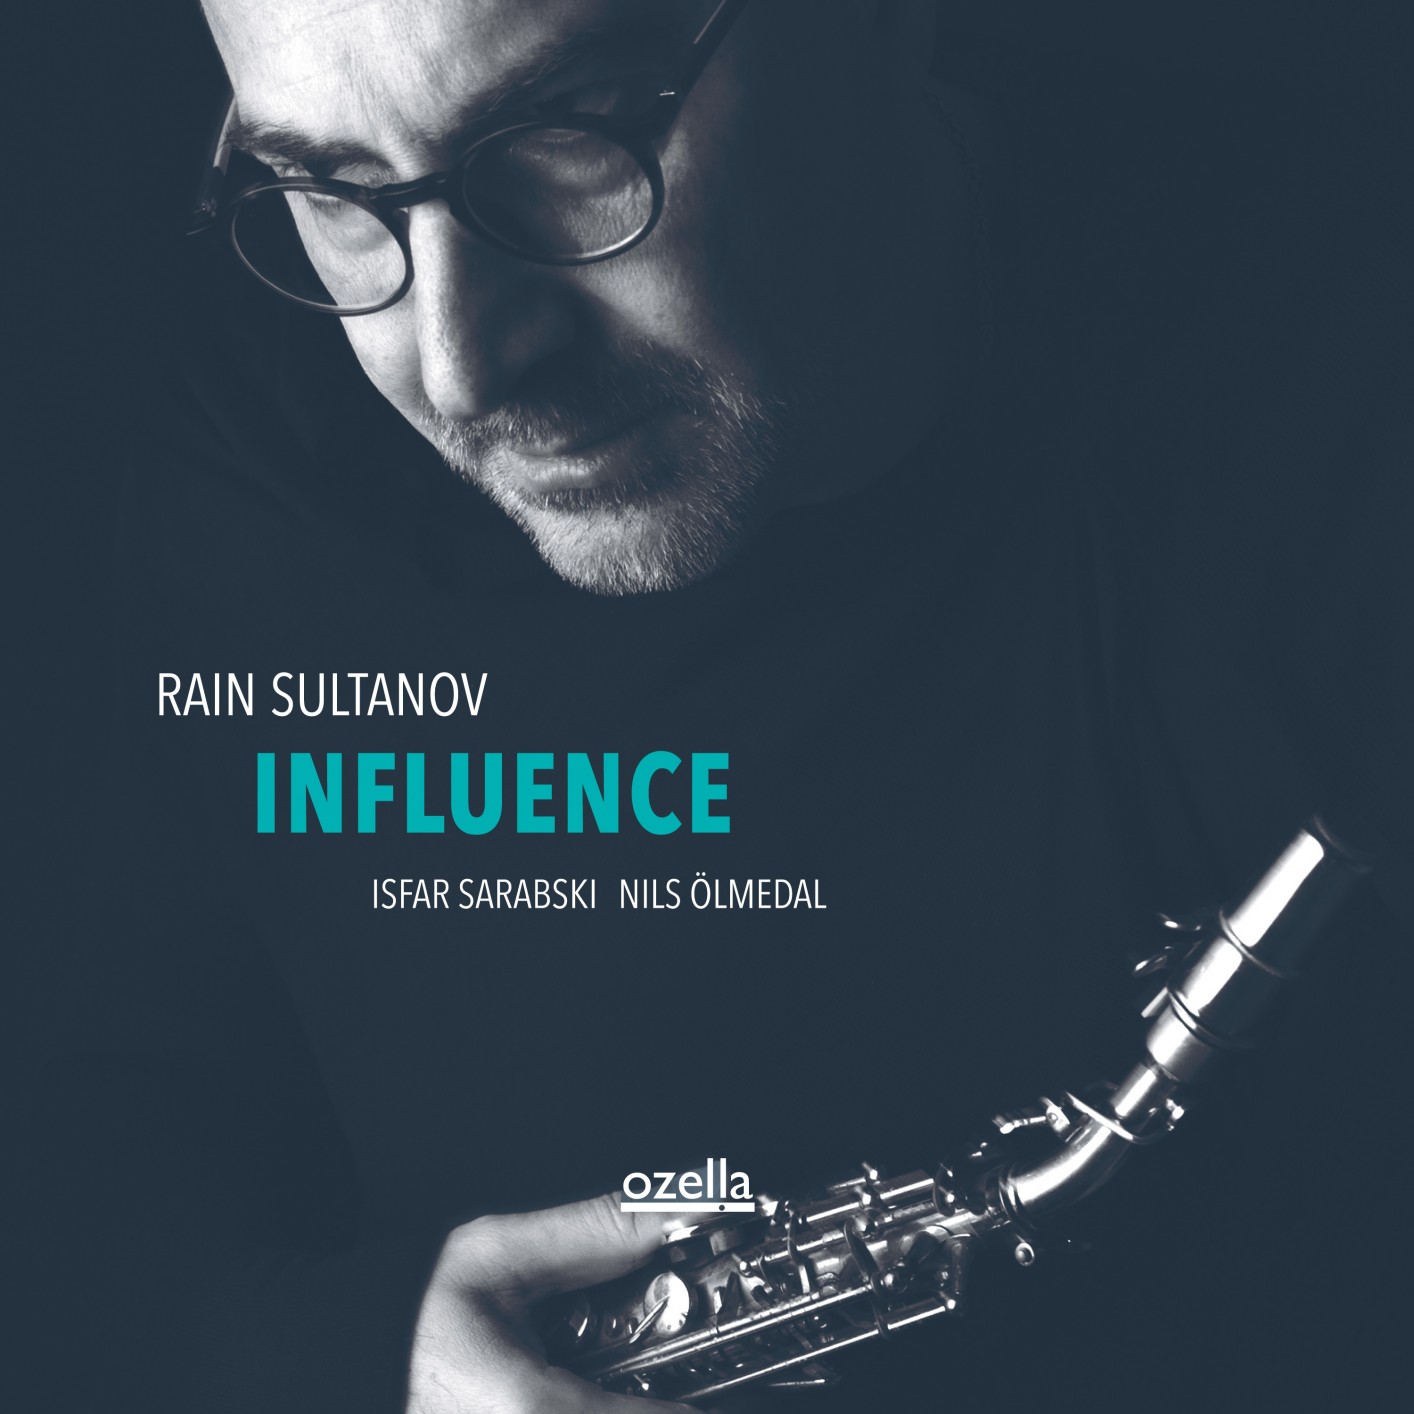 Rain Sultanov, Isfar Sarabski, Nils Olmedal – Influence (2020) [FLAC 24bit/96kHz]